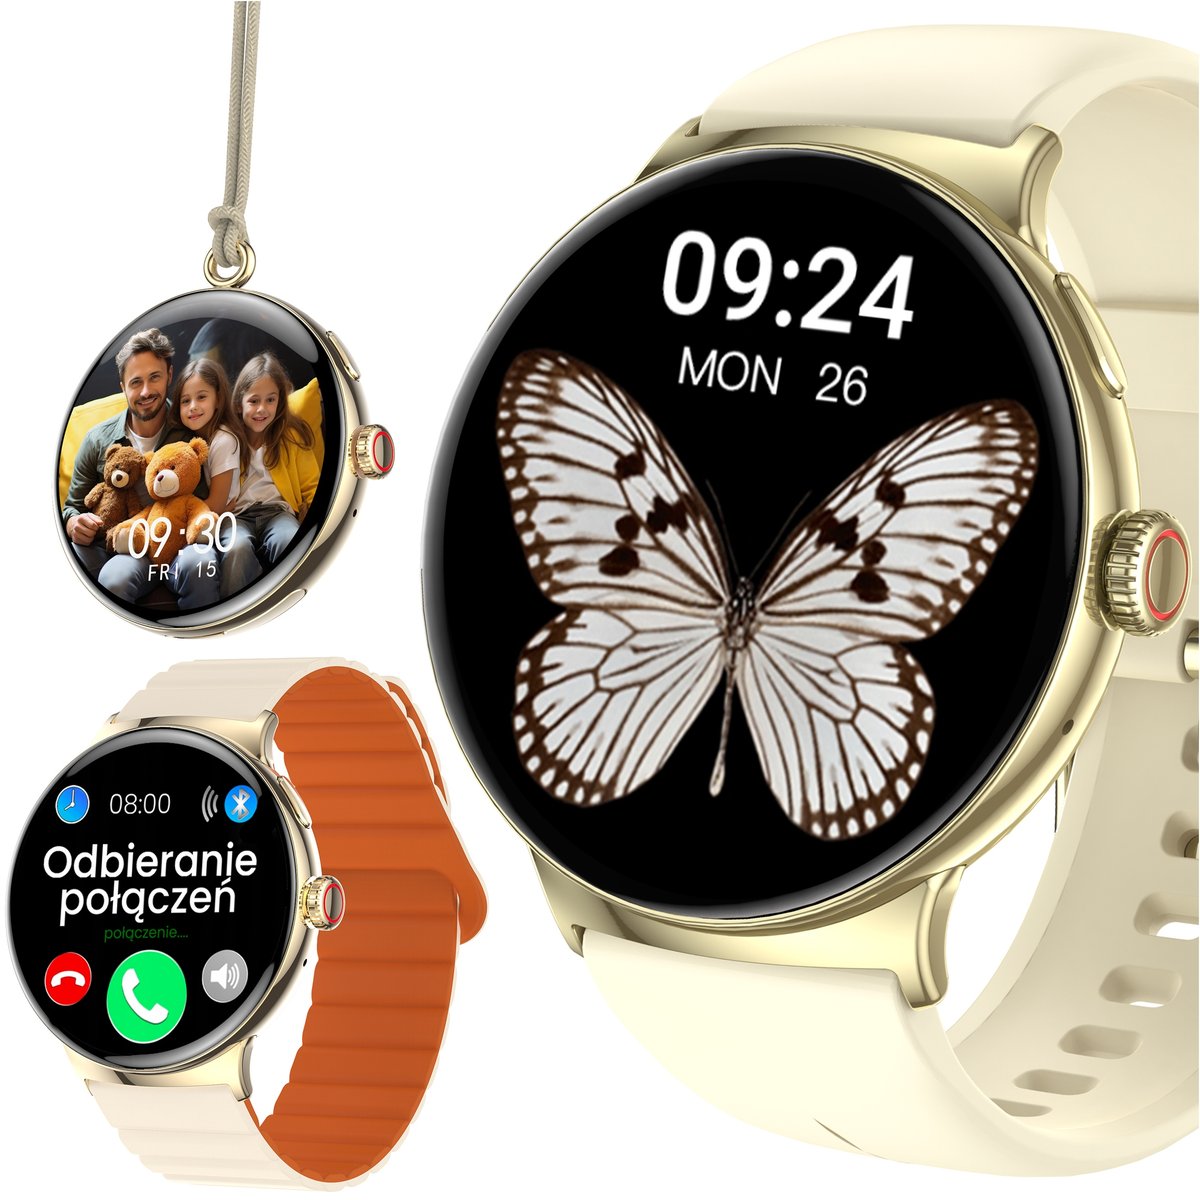 Zdjęcia - Smartwatche Smart Watch SMARTWATCH ZEGAREK NASZYJNIK DAMSKI ROZMOWY AUTOMATYCZNA ODPOWIEDŹ SMS PL 